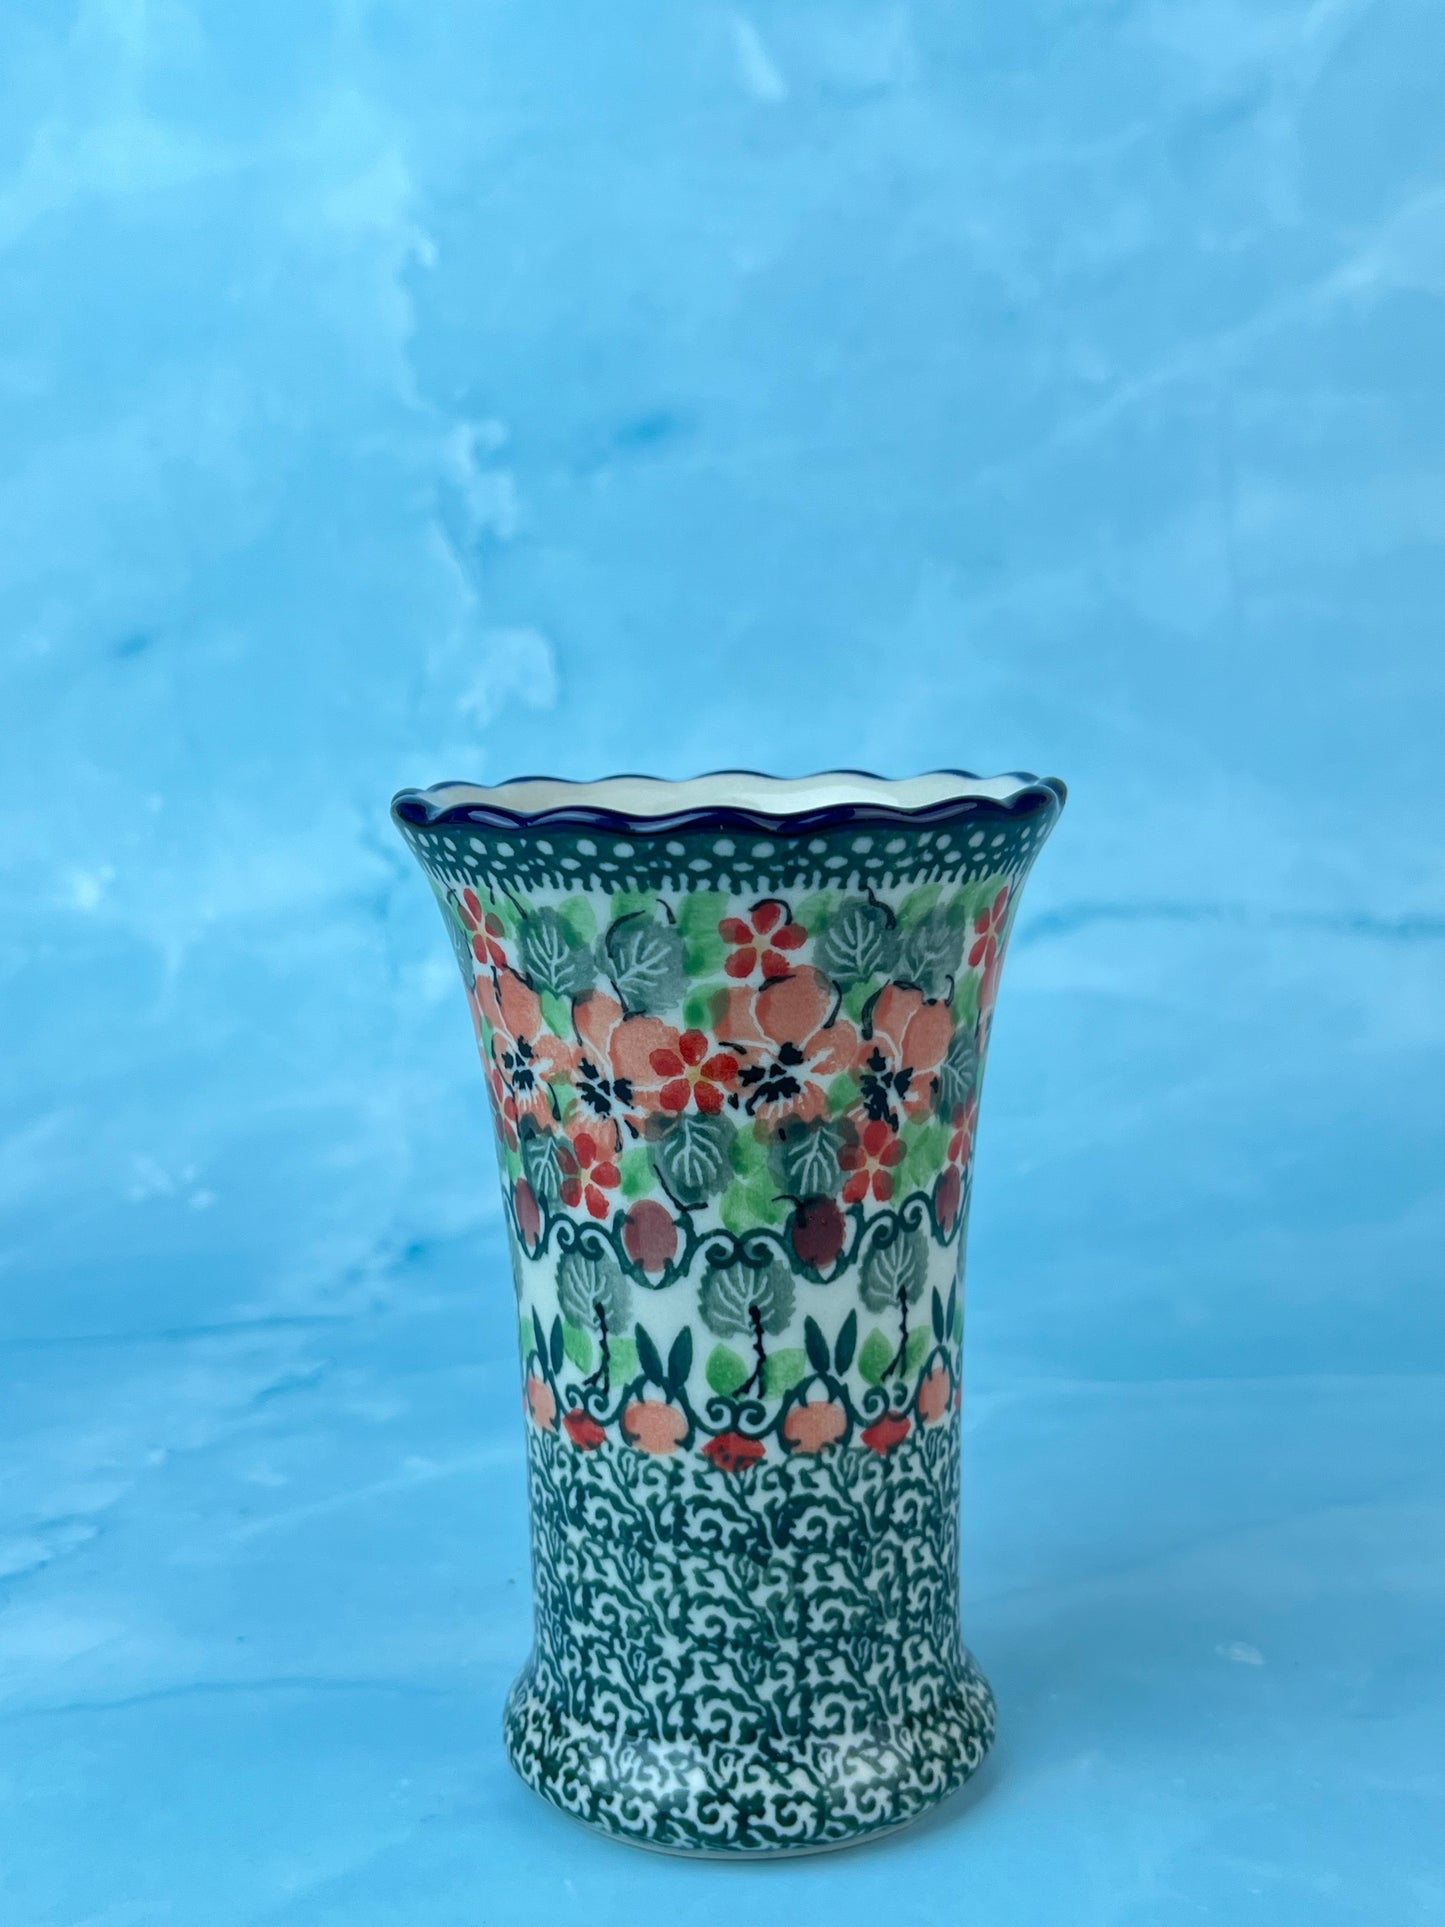 Ruffled Unikat Bud Vase - Shape 127 - Pattern U4797